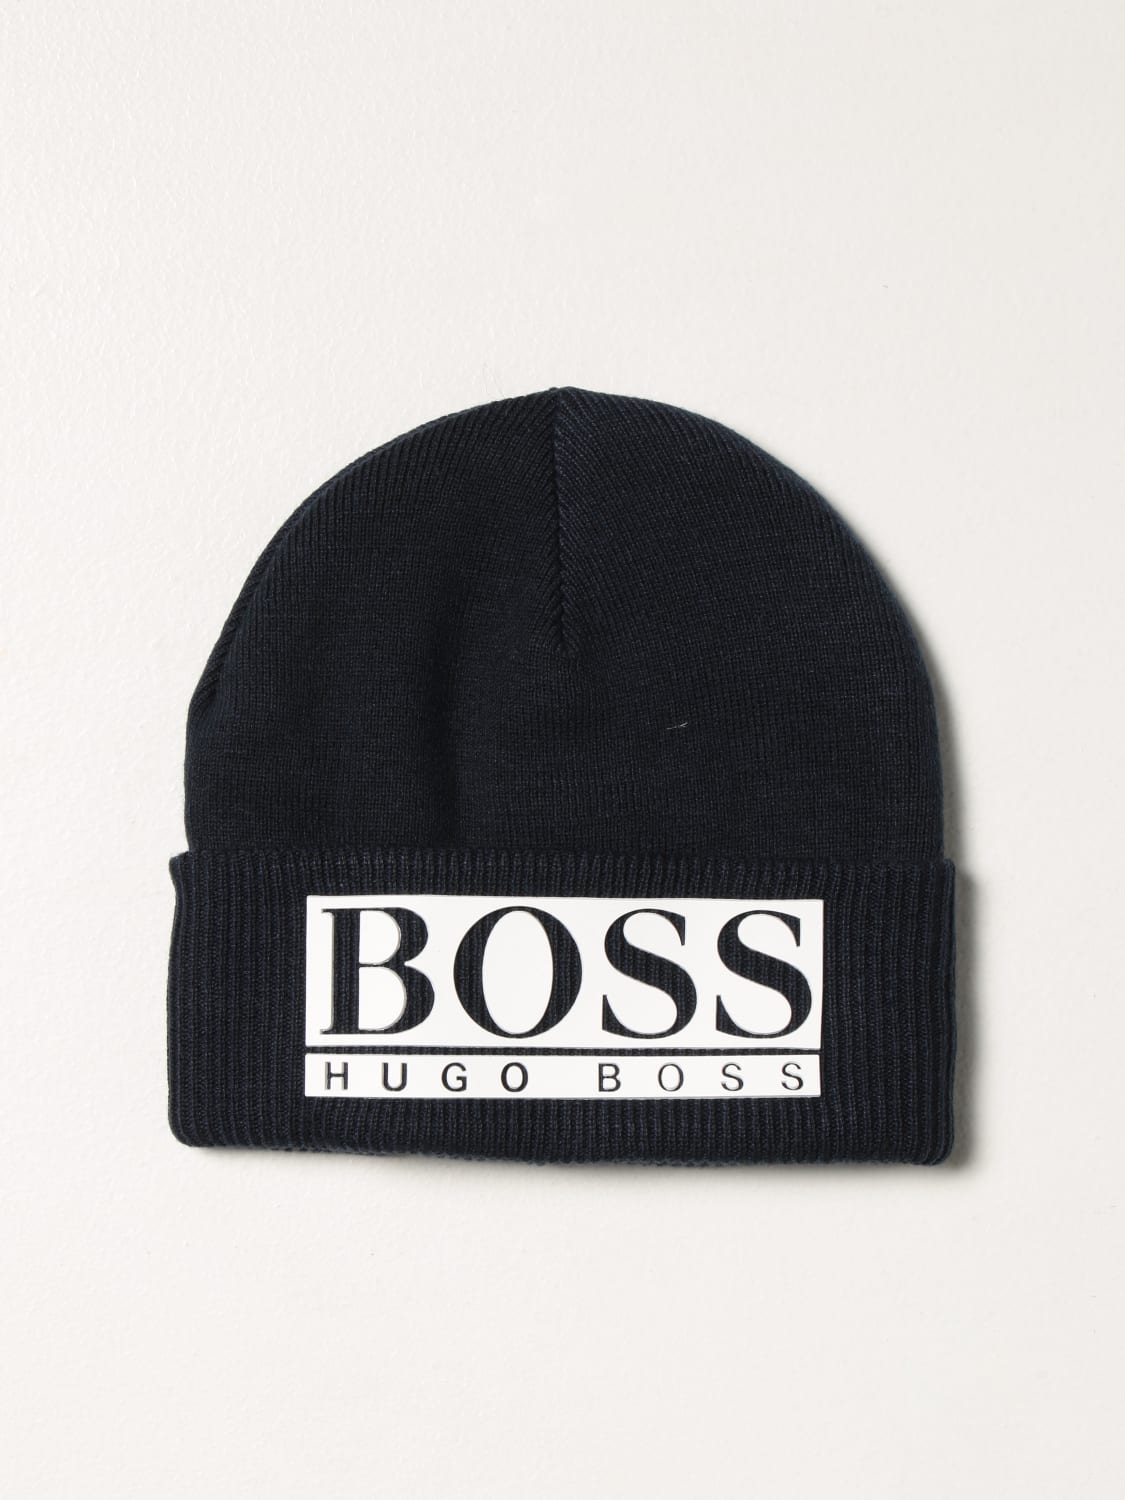 HUGO BOSS: beanie hat - Marine  HUGO BOSS hat J21240 online at